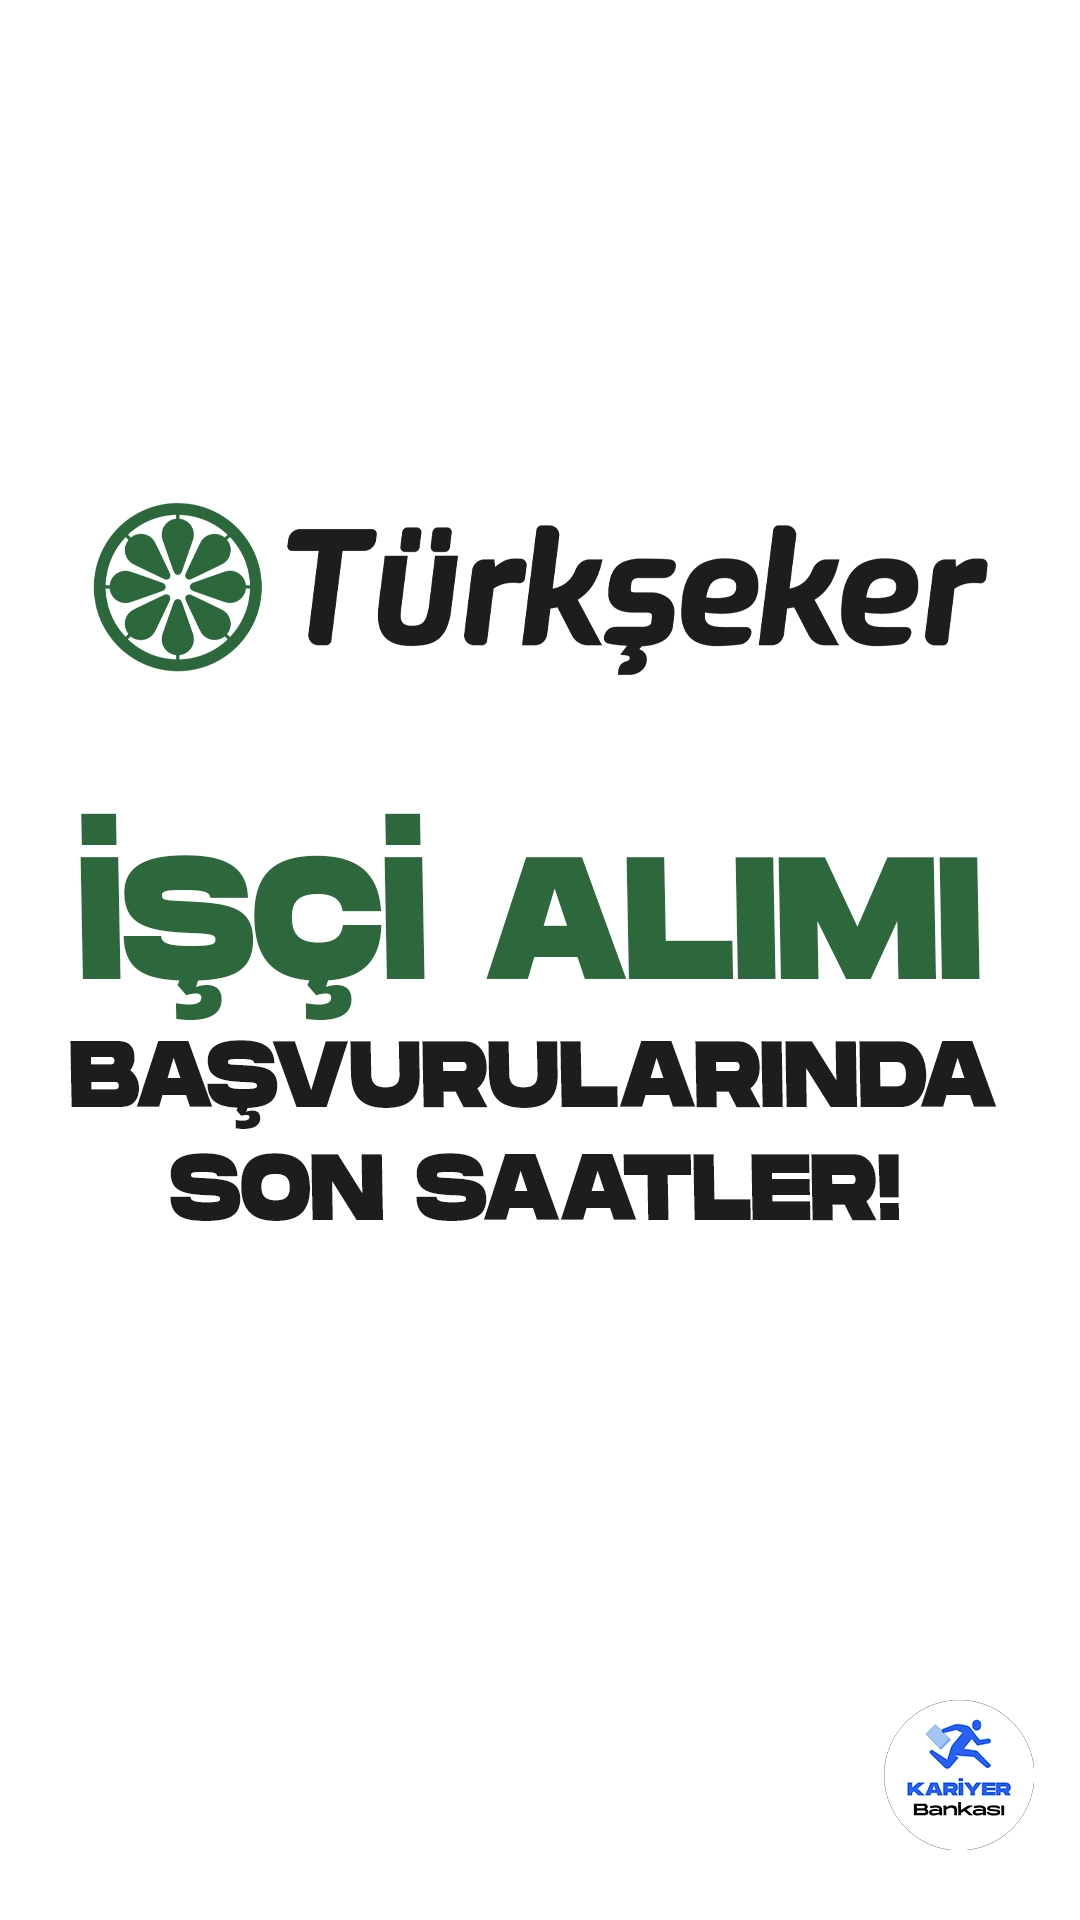 Türkşeker 613 işçi alımı için başvurularda son saatlere girildi. Başvurular bugün (15 Eylül) sona eriyor. Başvuru yapacak adayların şartları dikkatle incelemesi gerekmektedir.